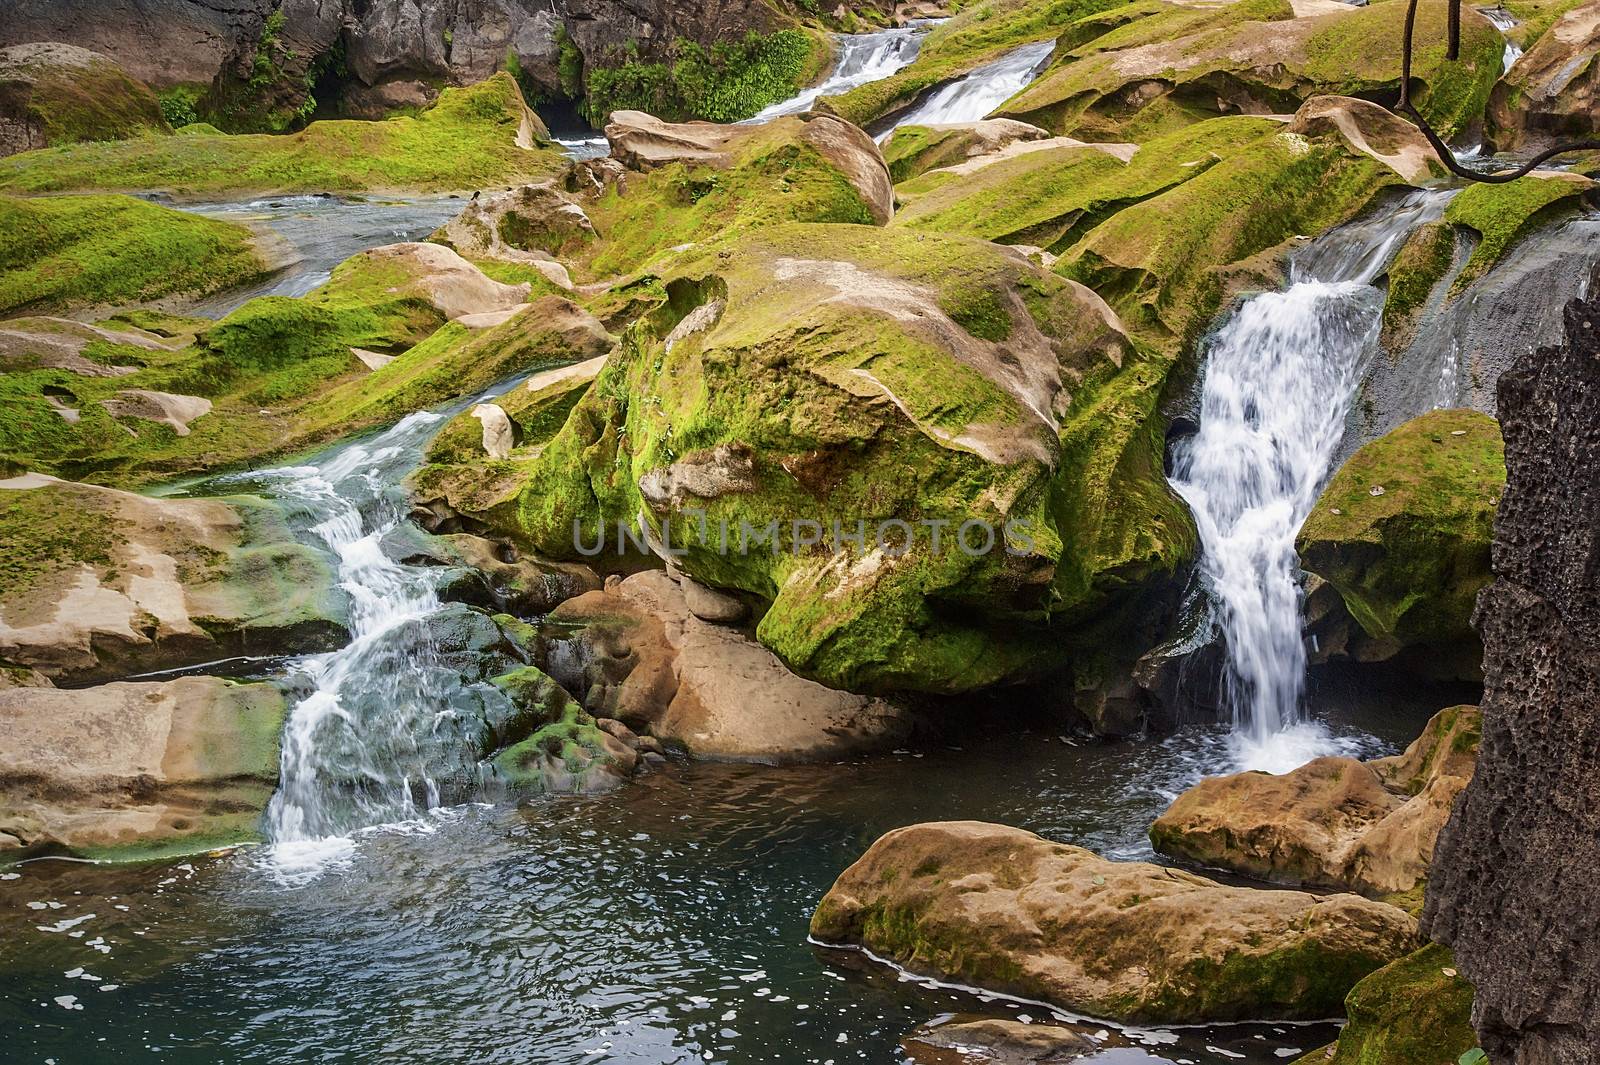 Photographed in China Huangguoshu Waterfall in Guizhou